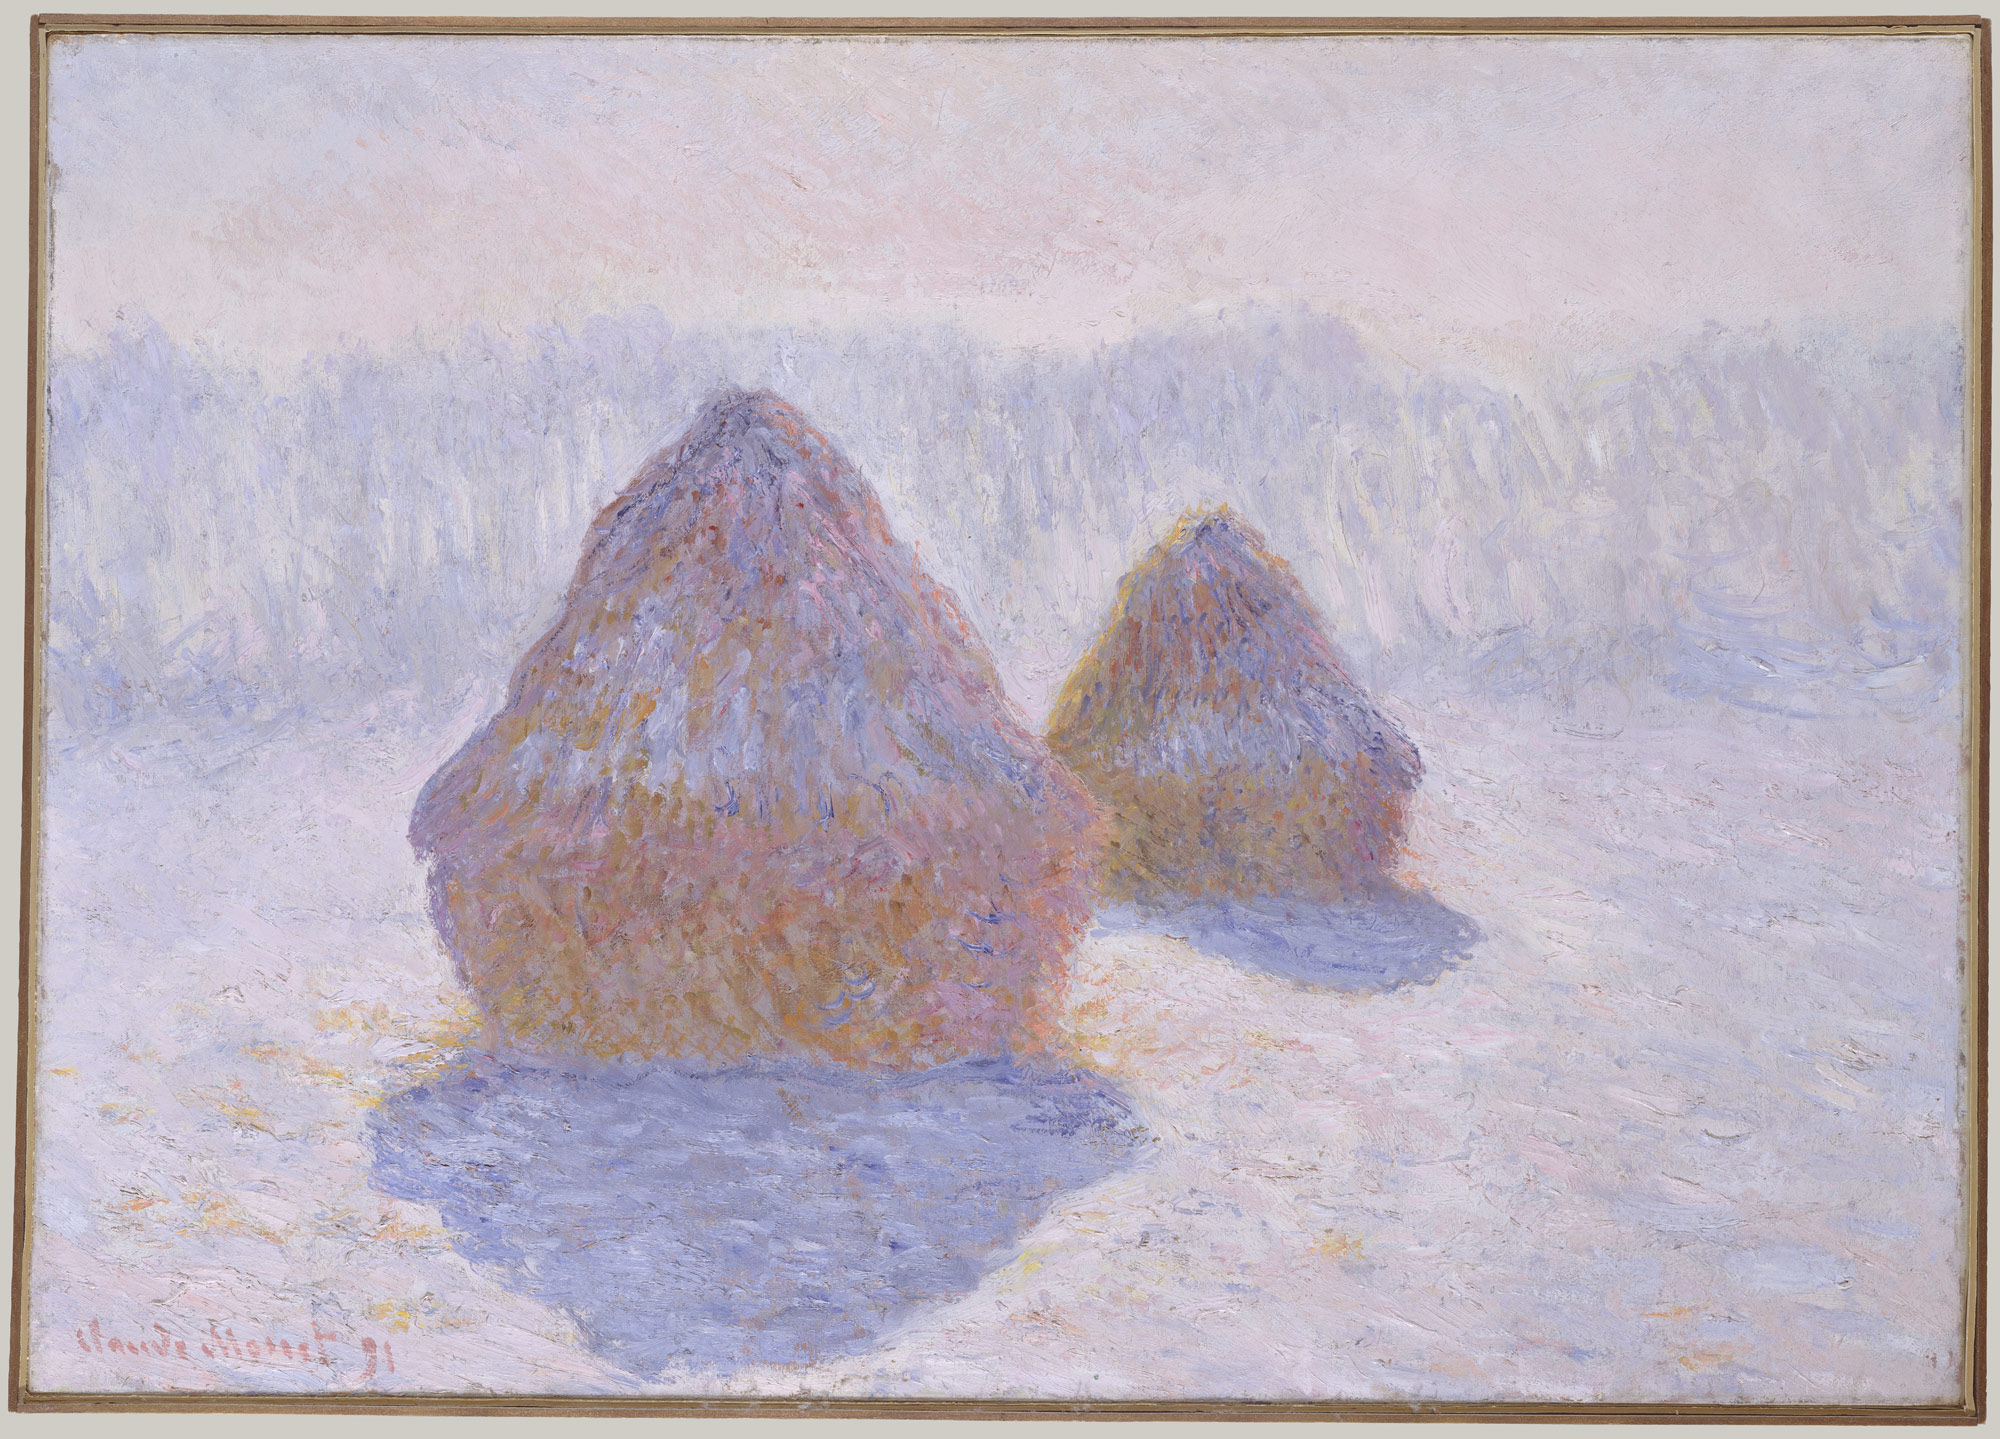 積みわら（雪と太陽） by Claude Monet - 1891年 - 65.4 x 92.1 cm 